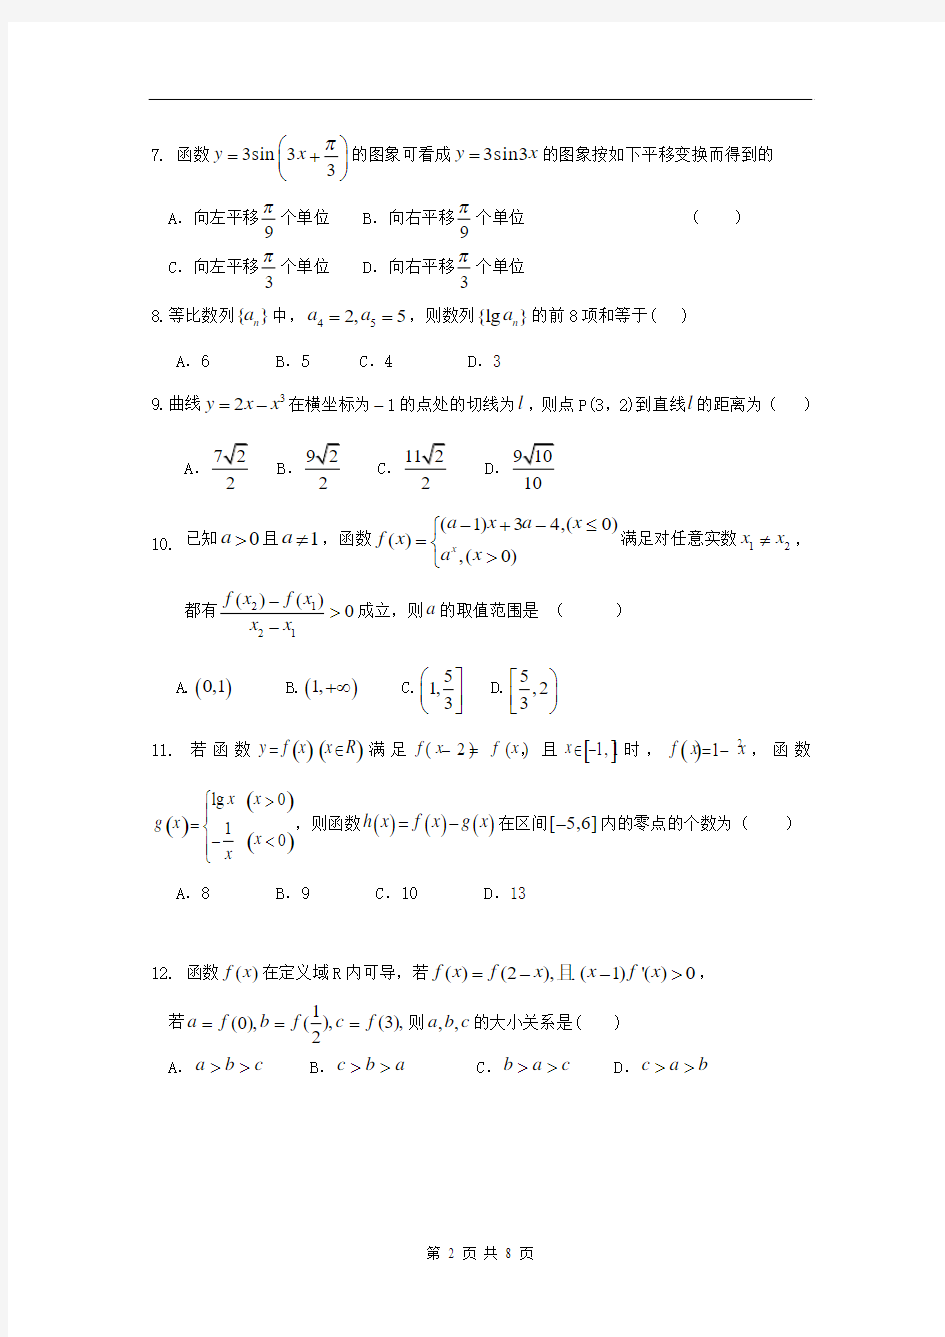 广西省桂林中学2015届高三8月考数学(文)